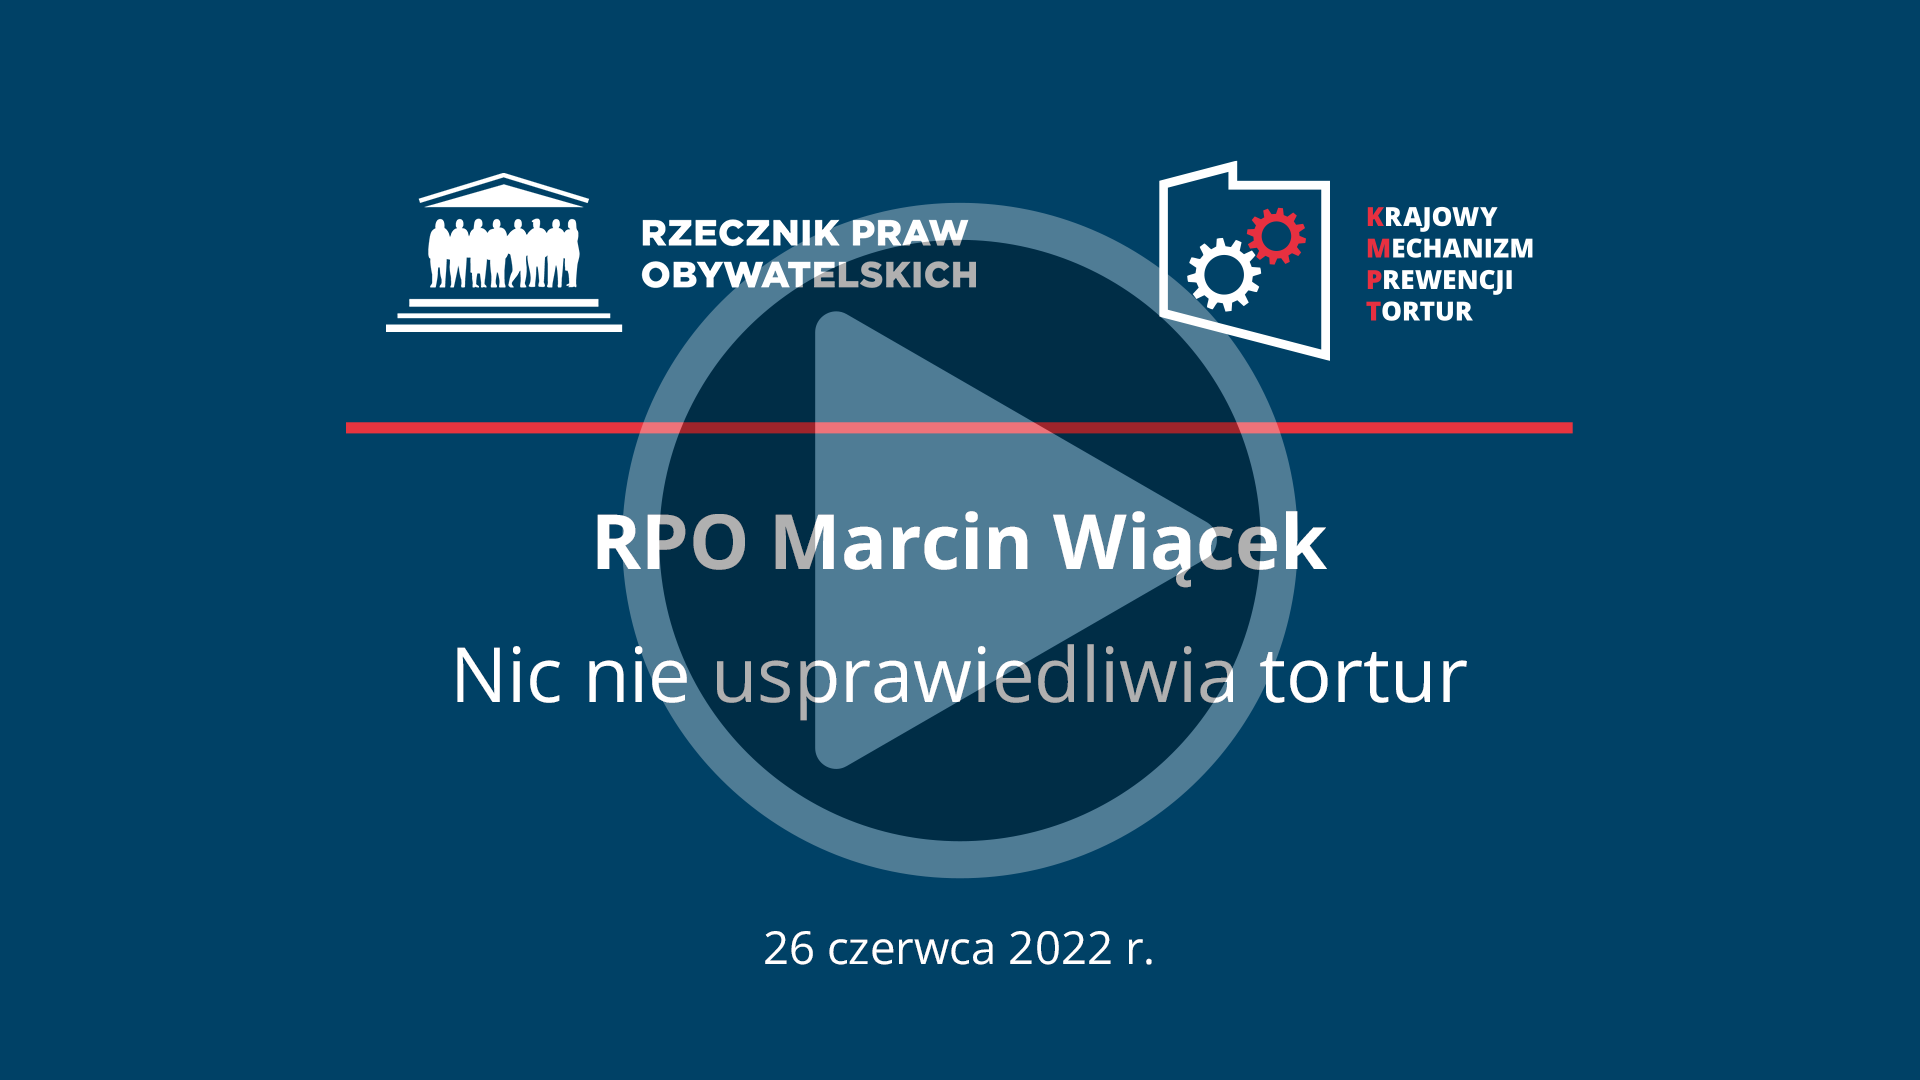 Plansza z napisem: Marcin Wiącek, Nic nie usprawiedliwia tortur, 26 czerwca 2022 r  – i przyciskiem odtwarzania wideo 